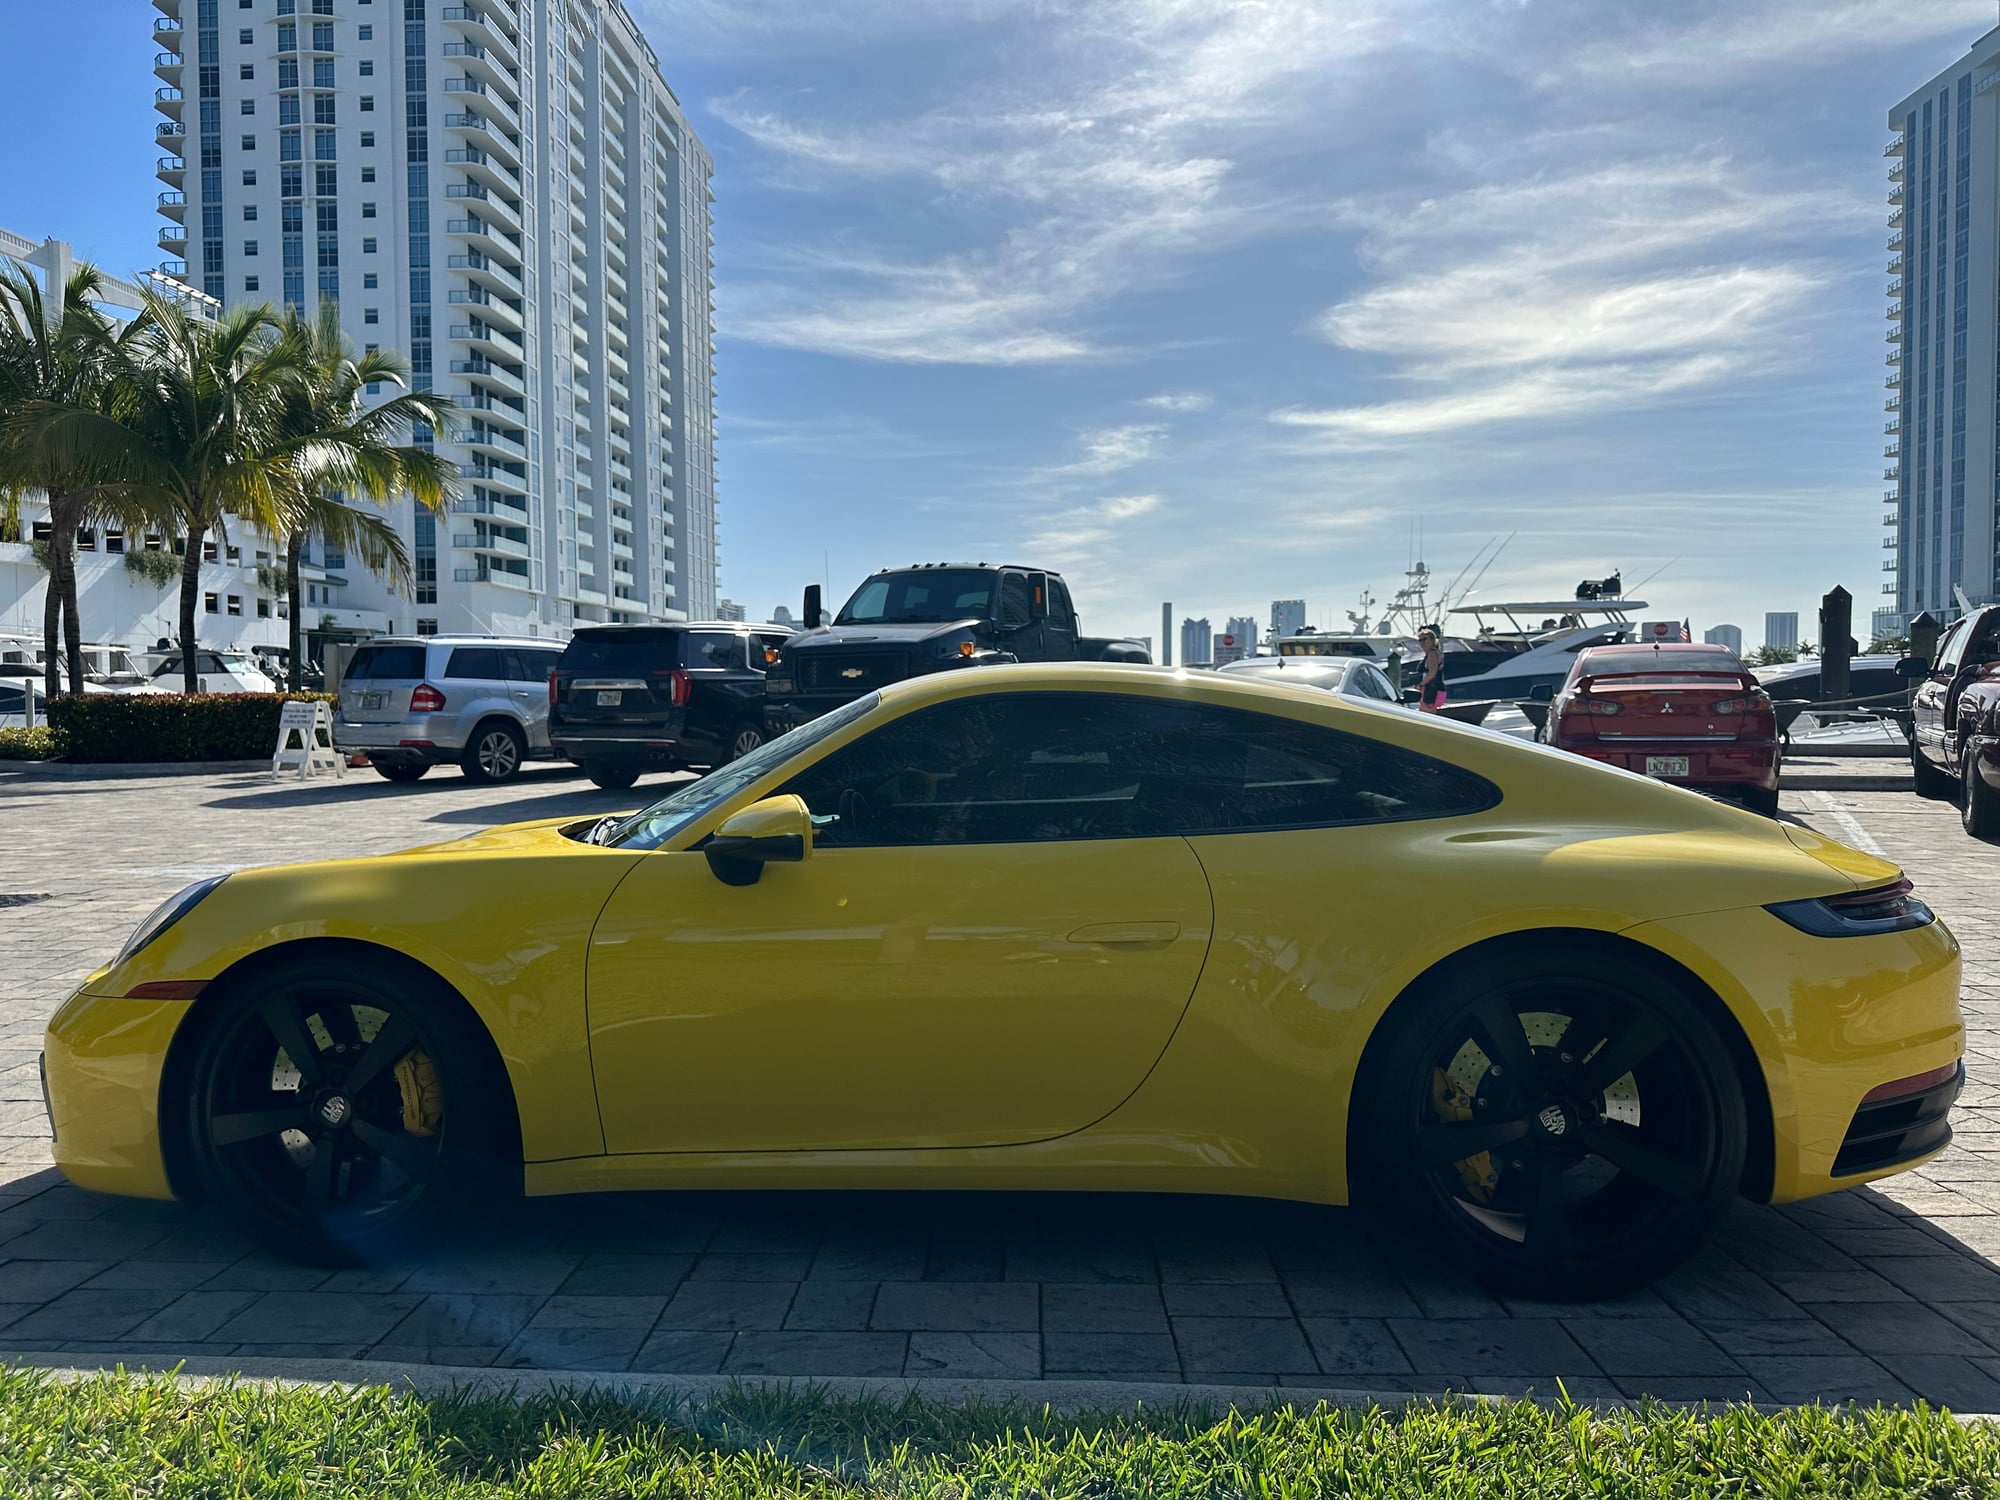 2020 Porsche 911 - FS: 2020 Porsche 992.1 Carrera S - Used - VIN WP0AB2A93LS225240 - 26,374 Miles - 6 cyl - 2WD - Automatic - Coupe - Yellow - Miami, FL 33160, United States